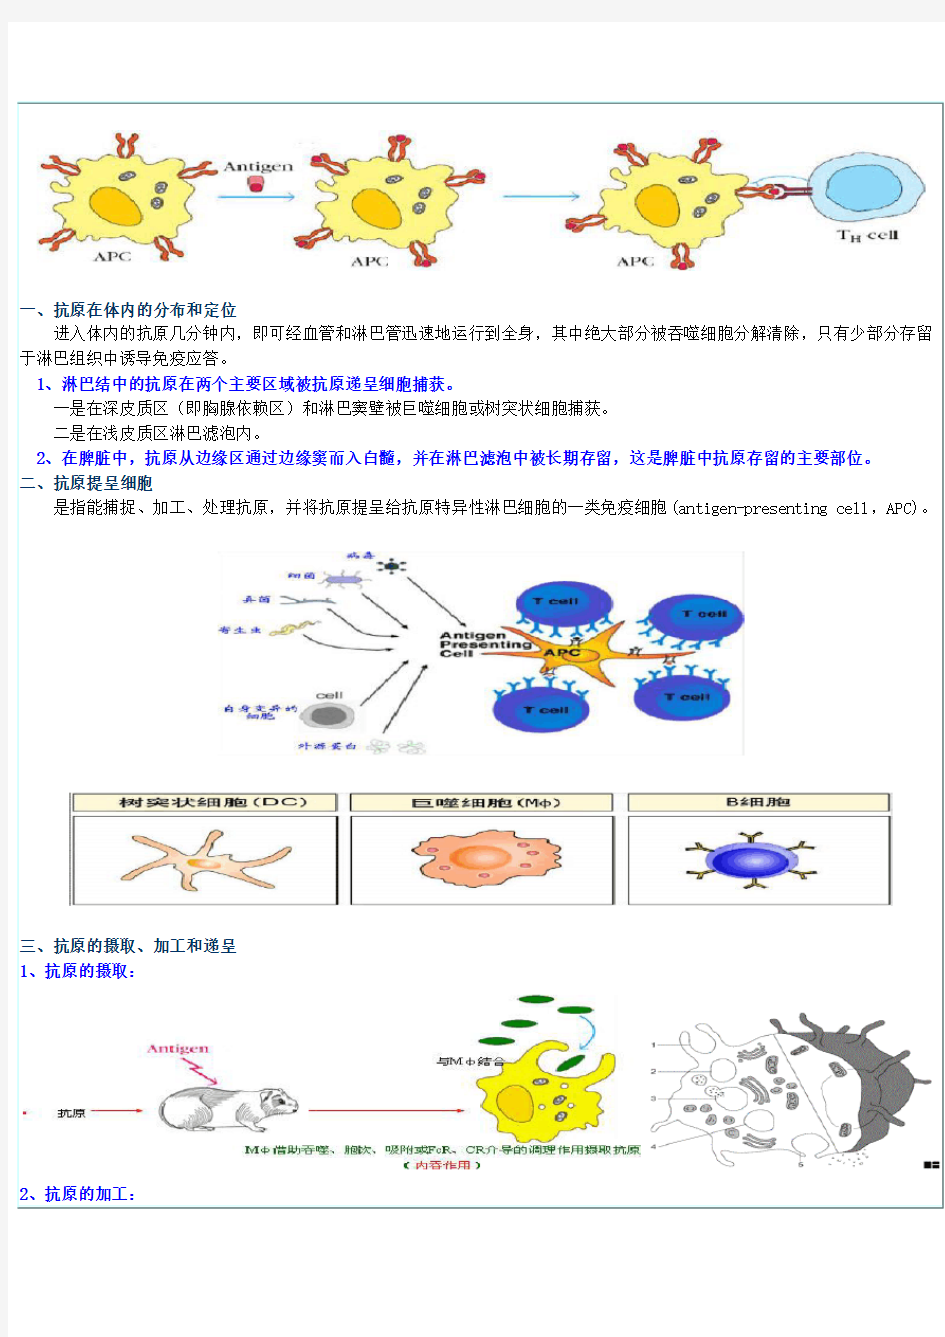 特异性免疫应答的基本过程及其调节机制